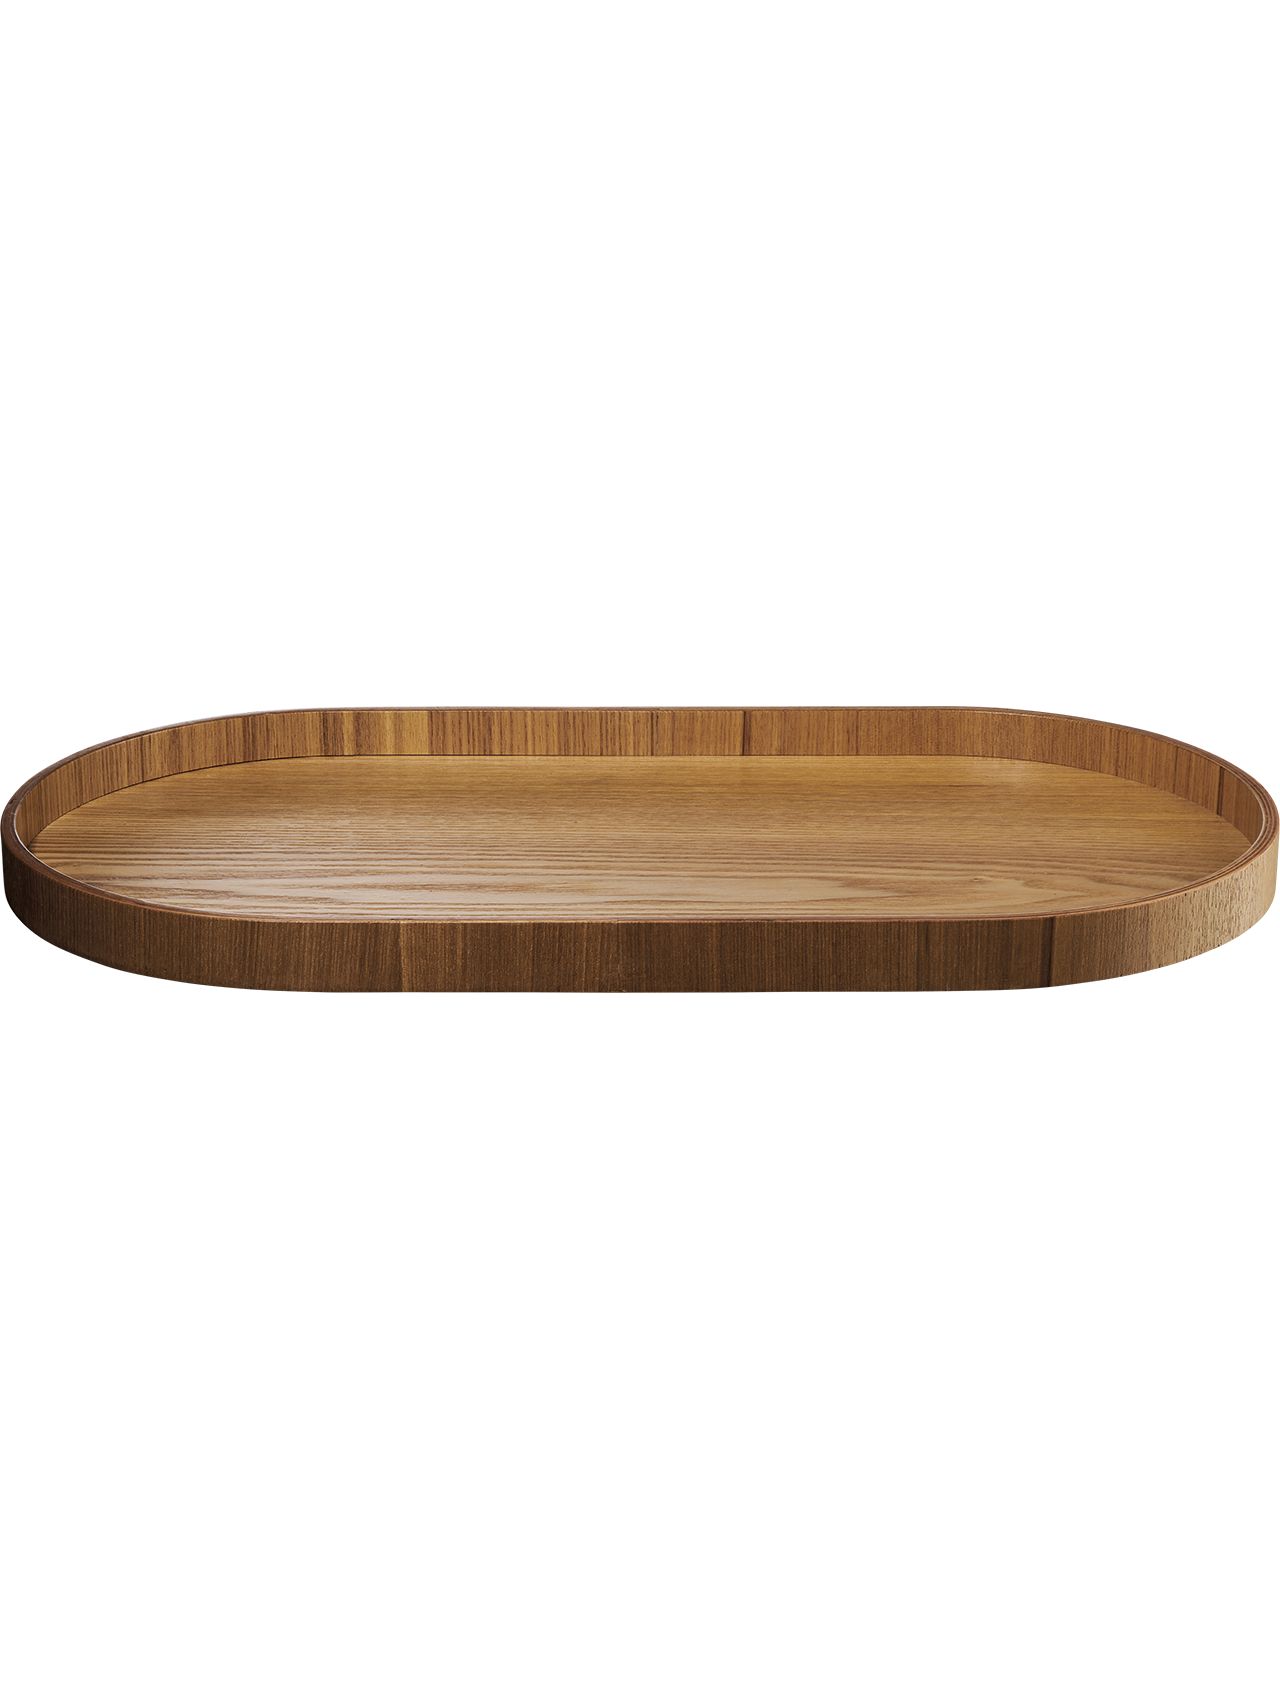 ASA wood Holztablett oval Weidenholz 44 x 22,5 cm H. 2,4 cm